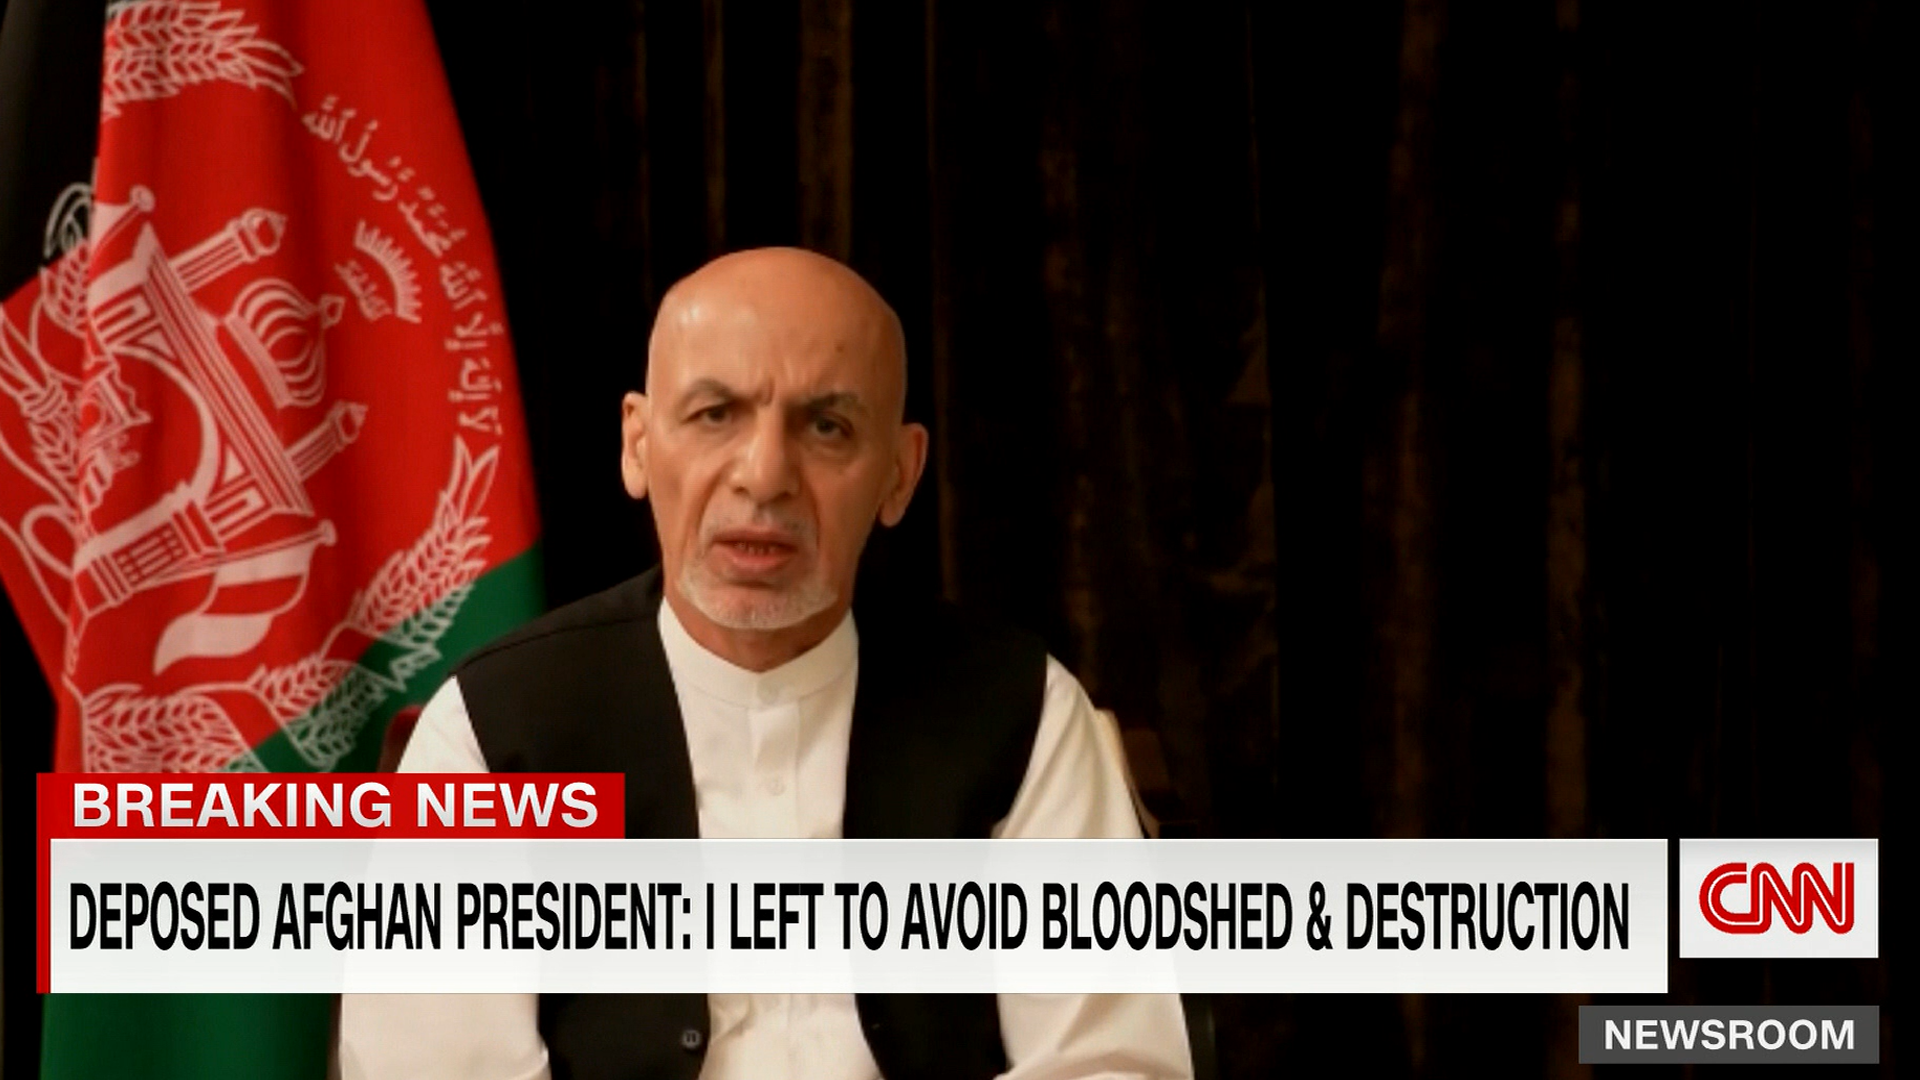 El ex presidente de Afganistán, Ashaf Ghani, se refirió este miércoles a su huída del país luego de la irrupción de los talibanes.